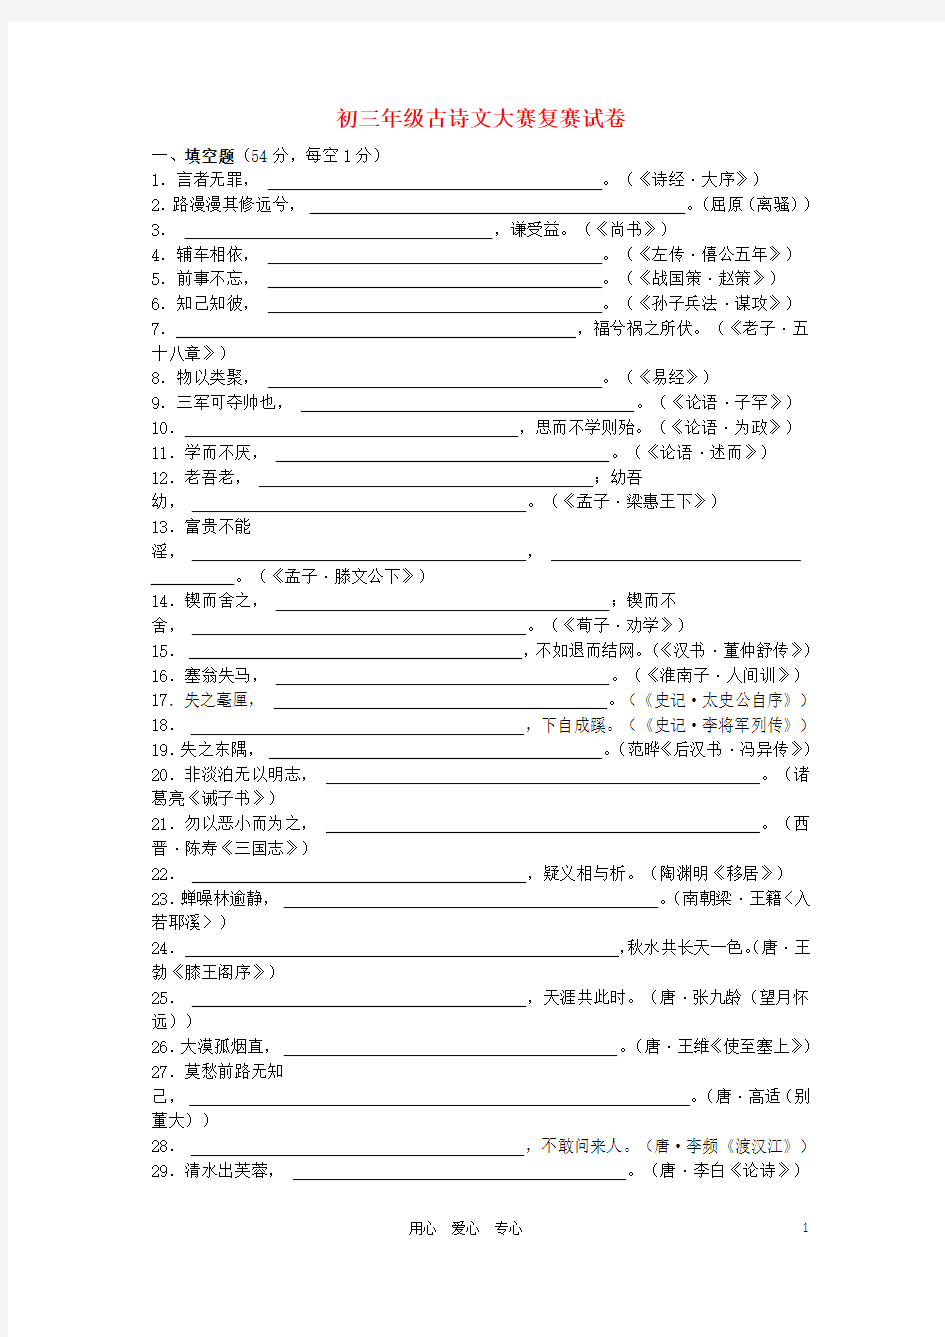 上海九年级语文古诗文大赛复赛试卷  上海五四制